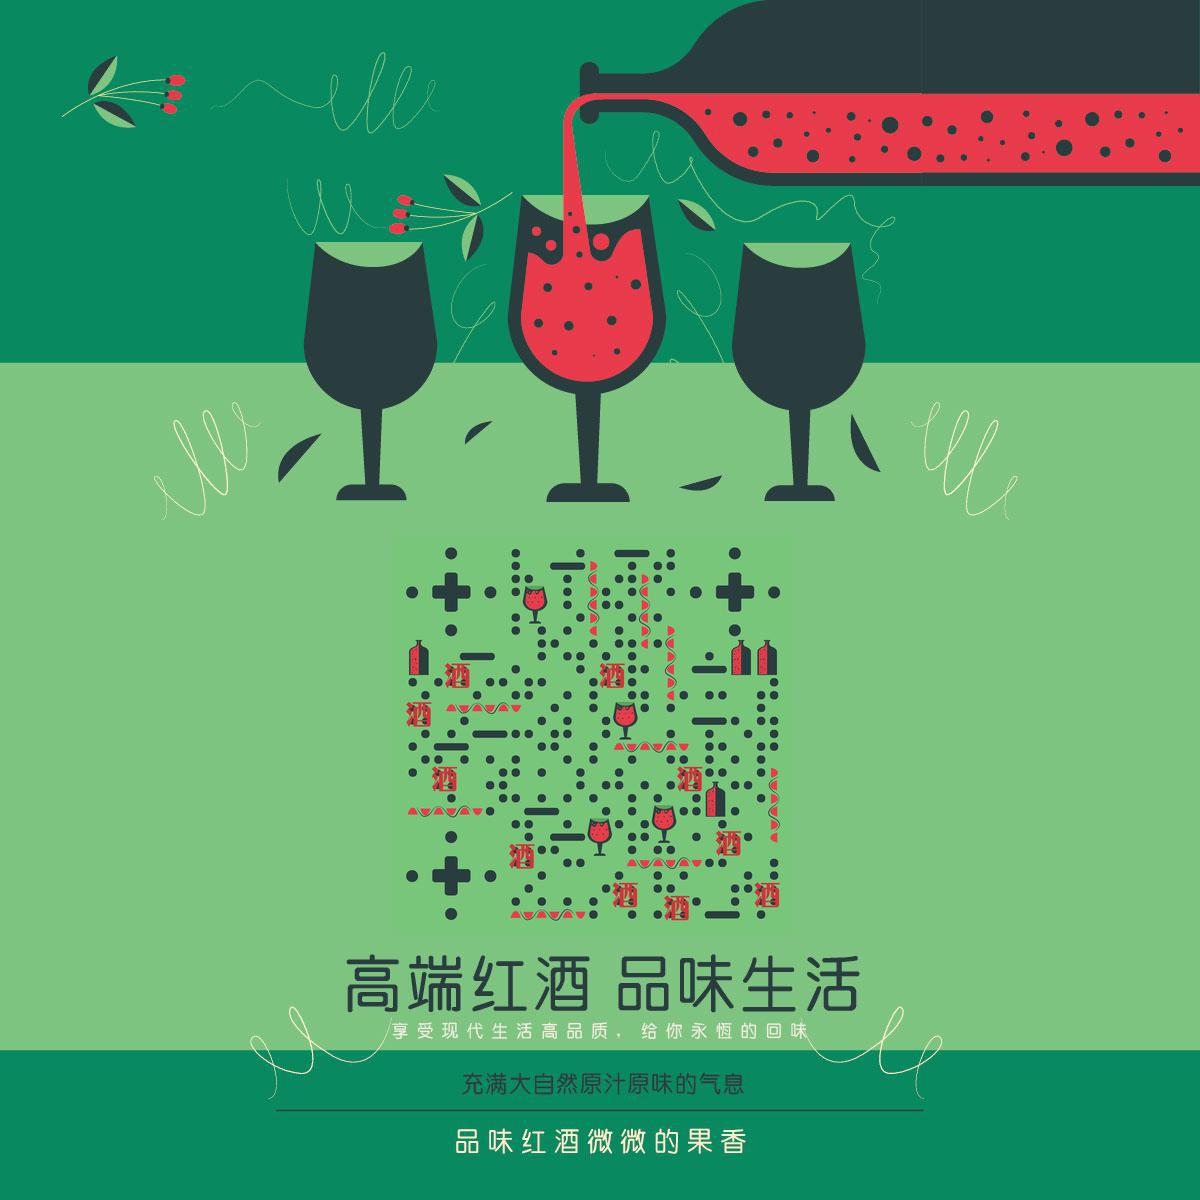 高端红酒品味生活自然气息二维码-正方形码-平面静态